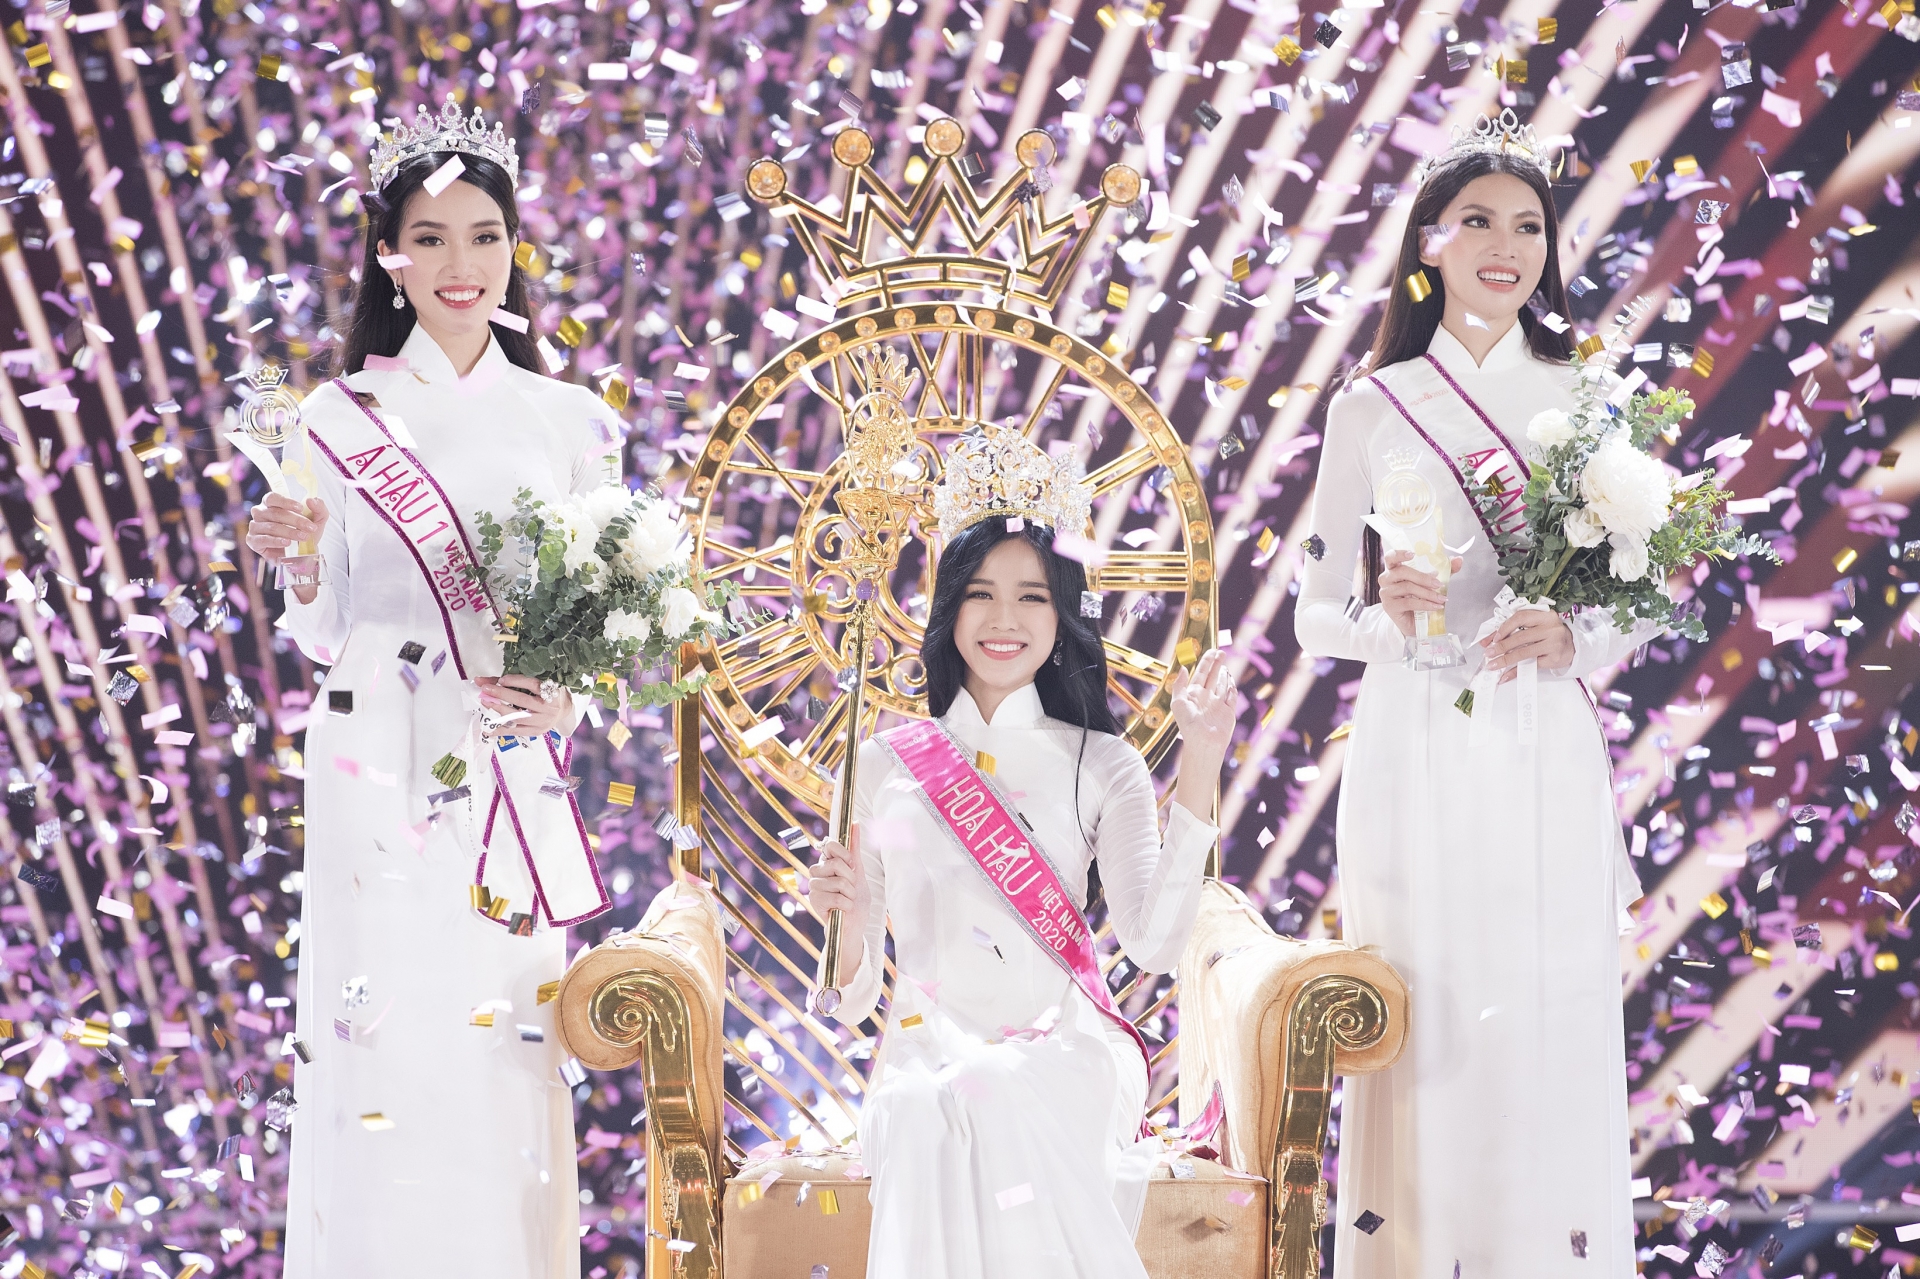 Tân Hoa hậu Đỗ Thị Hà nhận được nhiều lời khen vì nhan sắc xinh đẹp và học vấn ấn tượng.